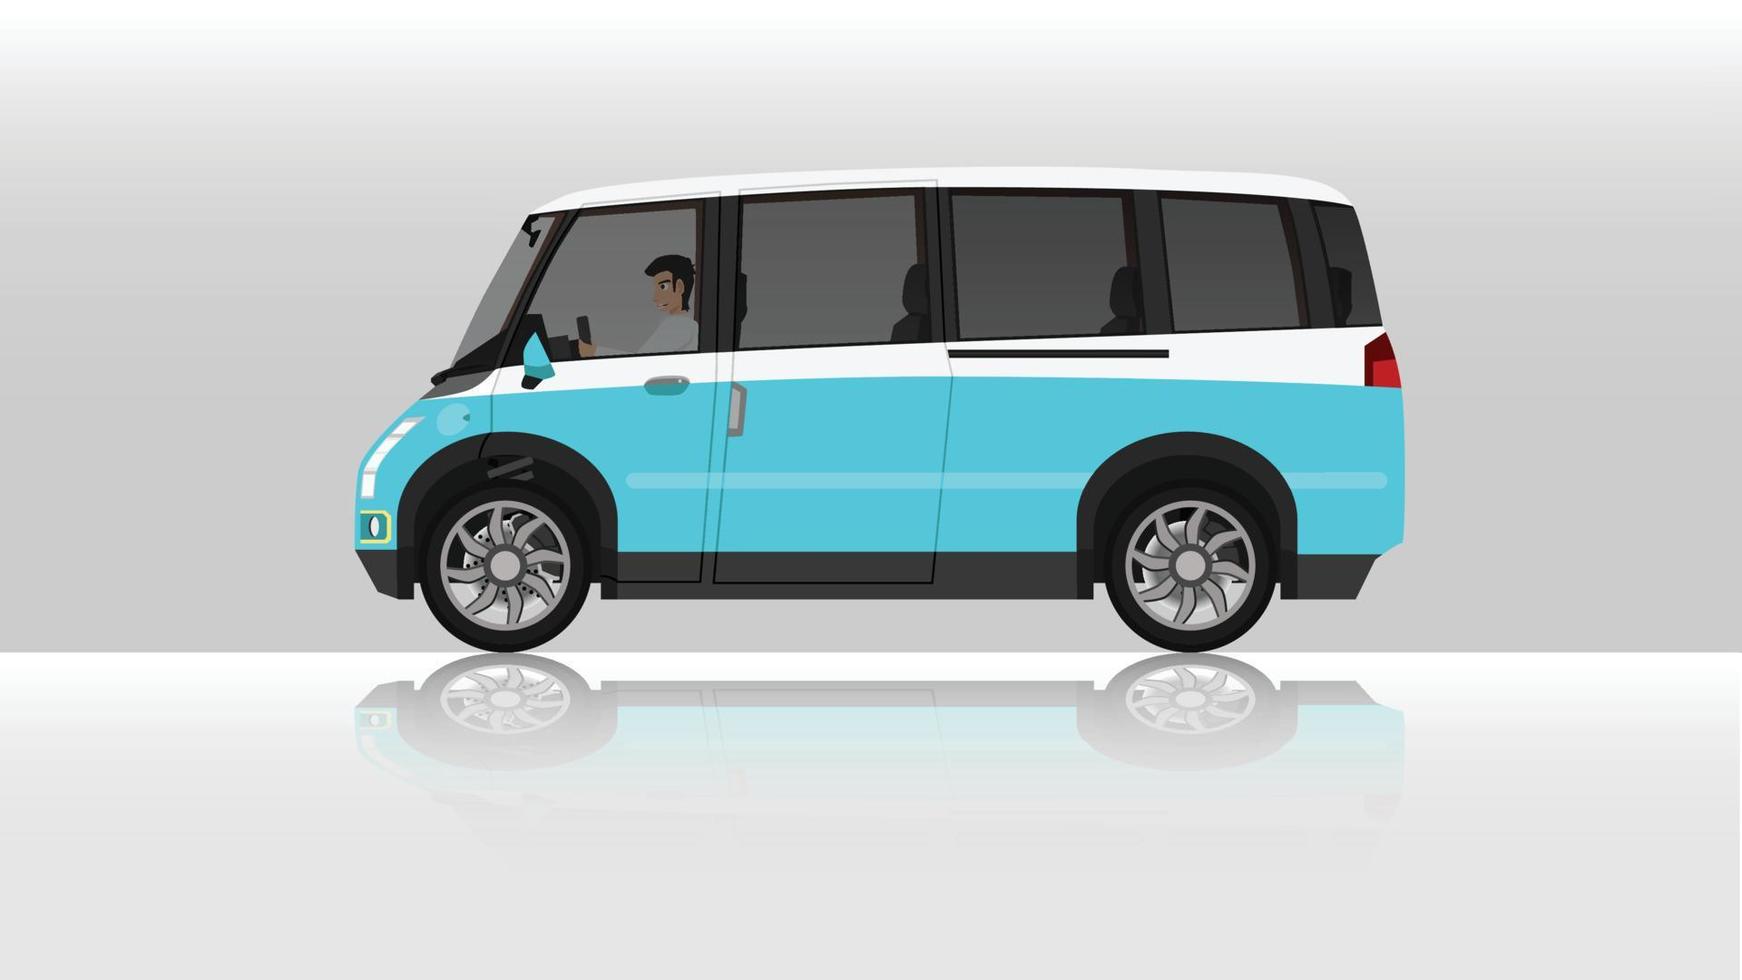 illustrazione vettoriale di concetto del lato dettagliato di un'auto furgone solista a due toni piatta con uomo alla guida all'interno dell'auto. con l'ombra dell'auto riflessa dal terreno sottostante. e sfondo bianco isolato.